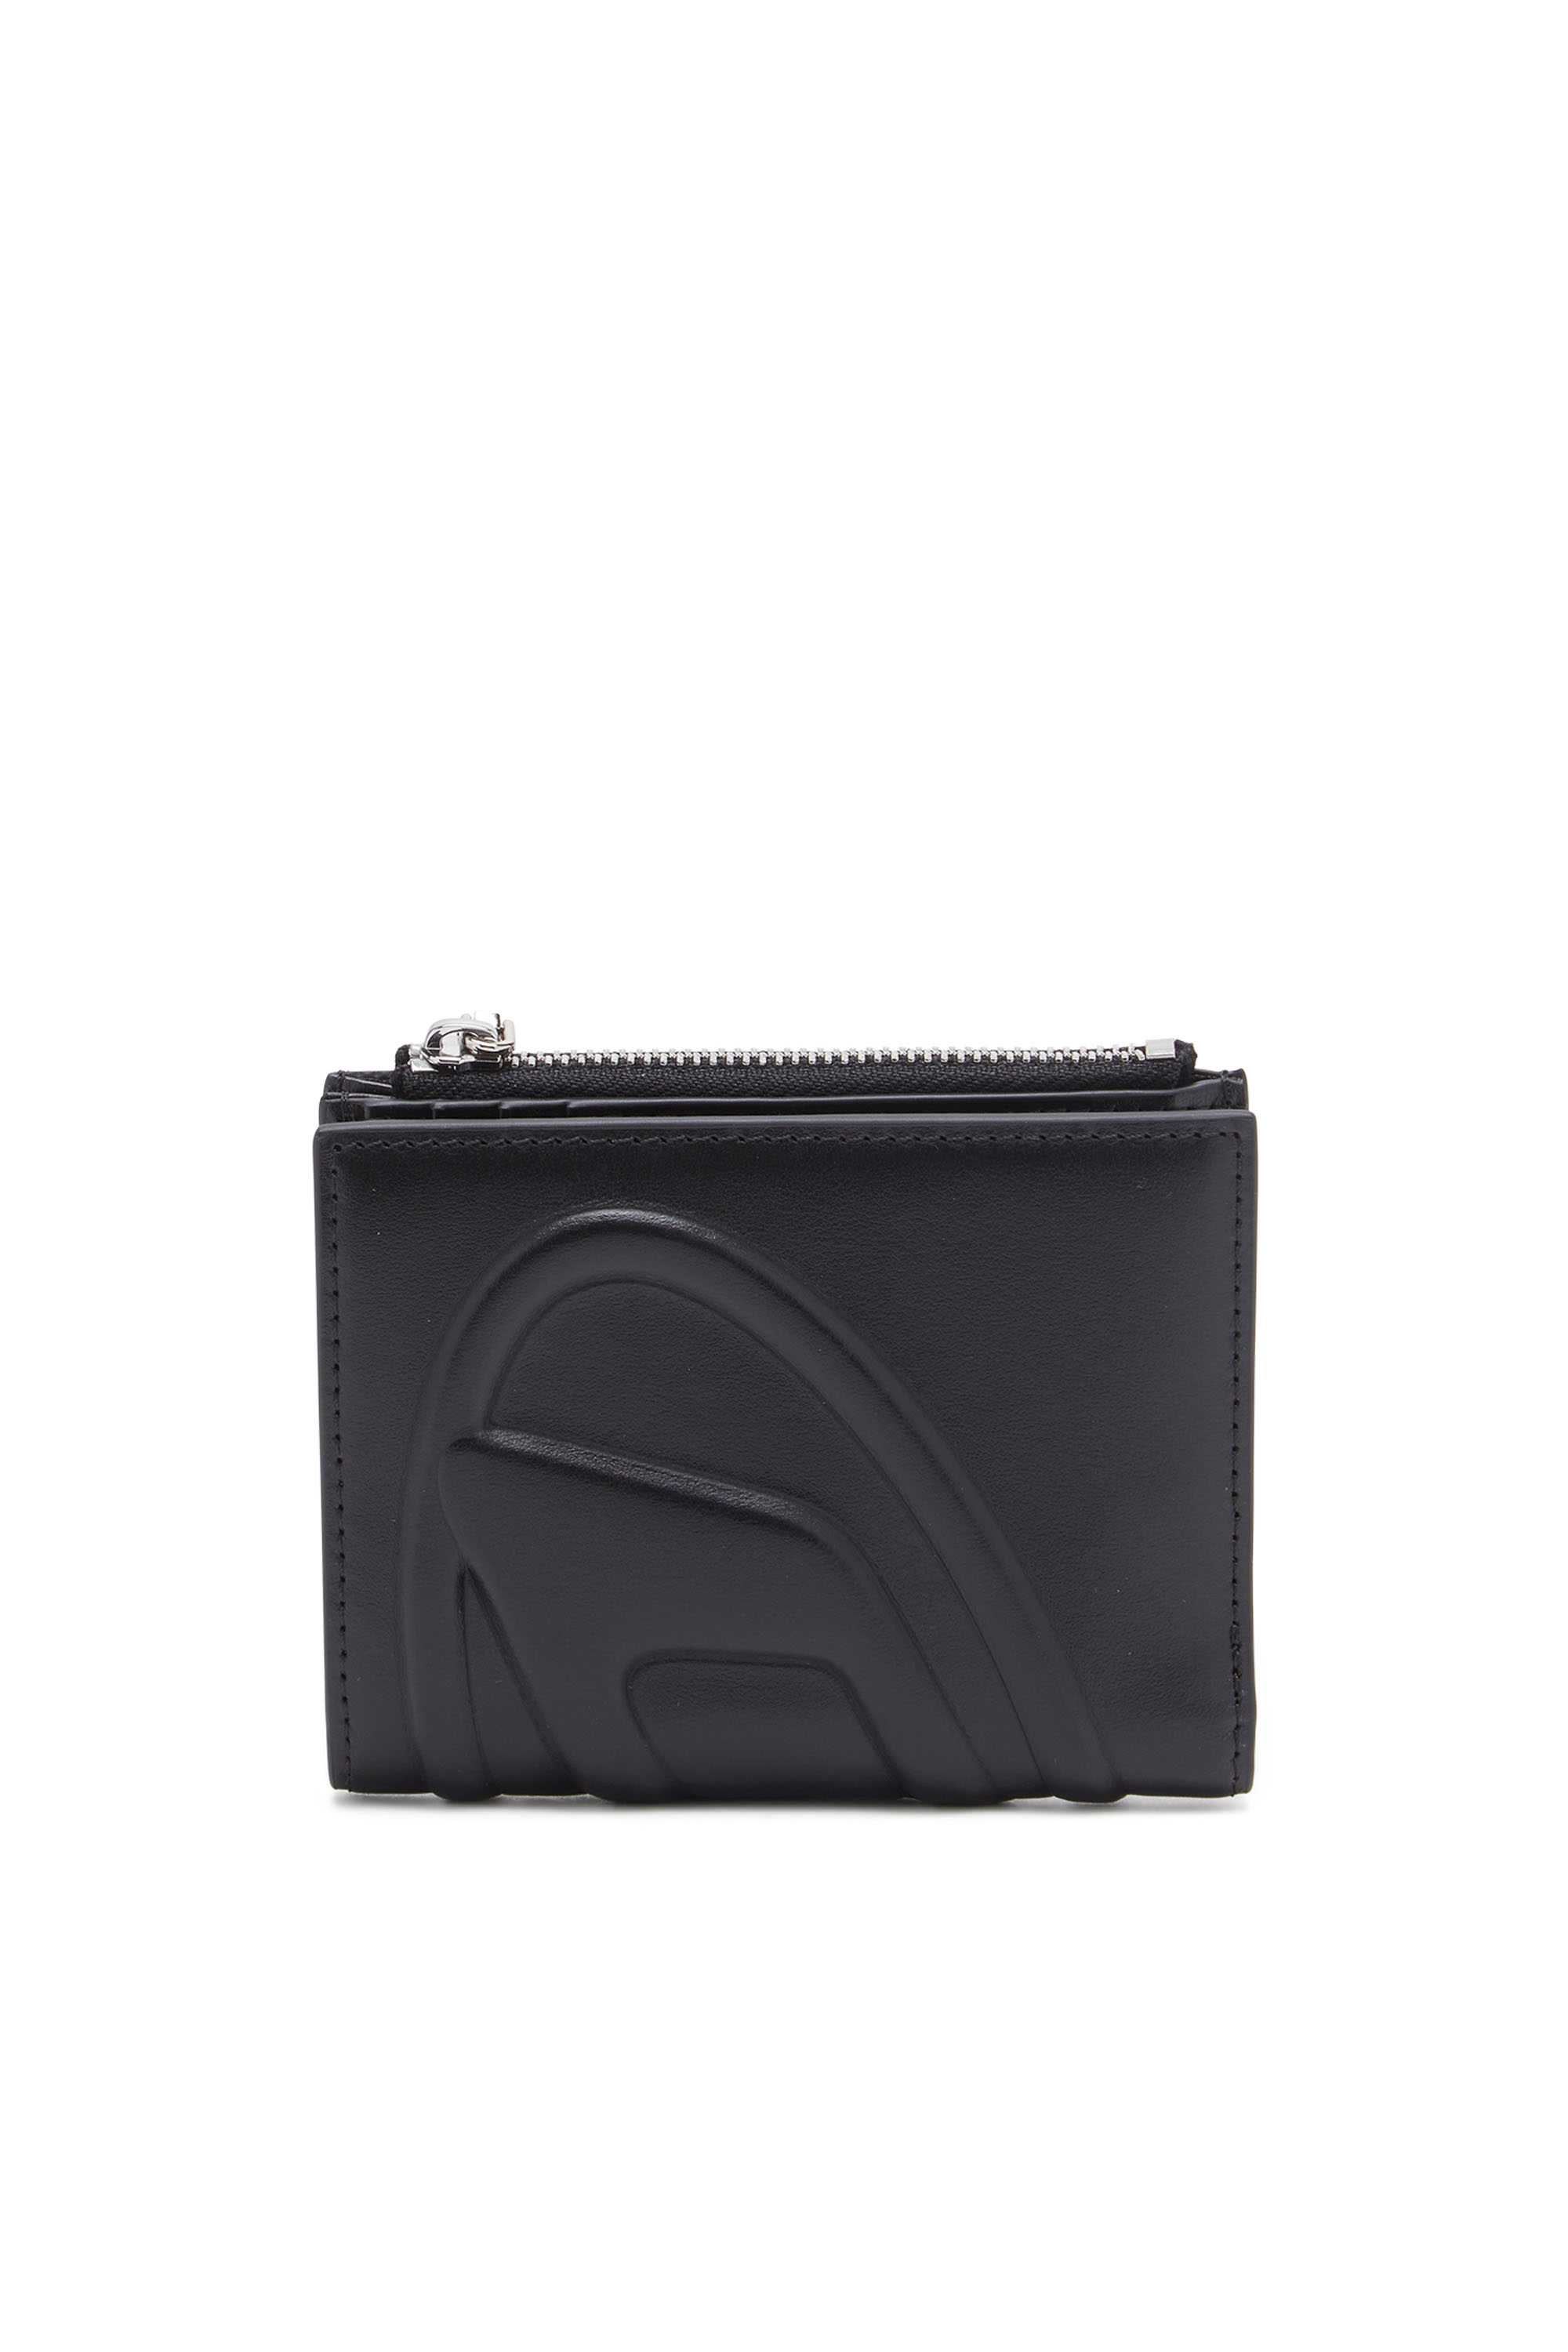 Diesel - Kleines Portemonnaie aus Leder mit Logo-Prägung - Kleine Portemonnaies - Damen - Schwarz